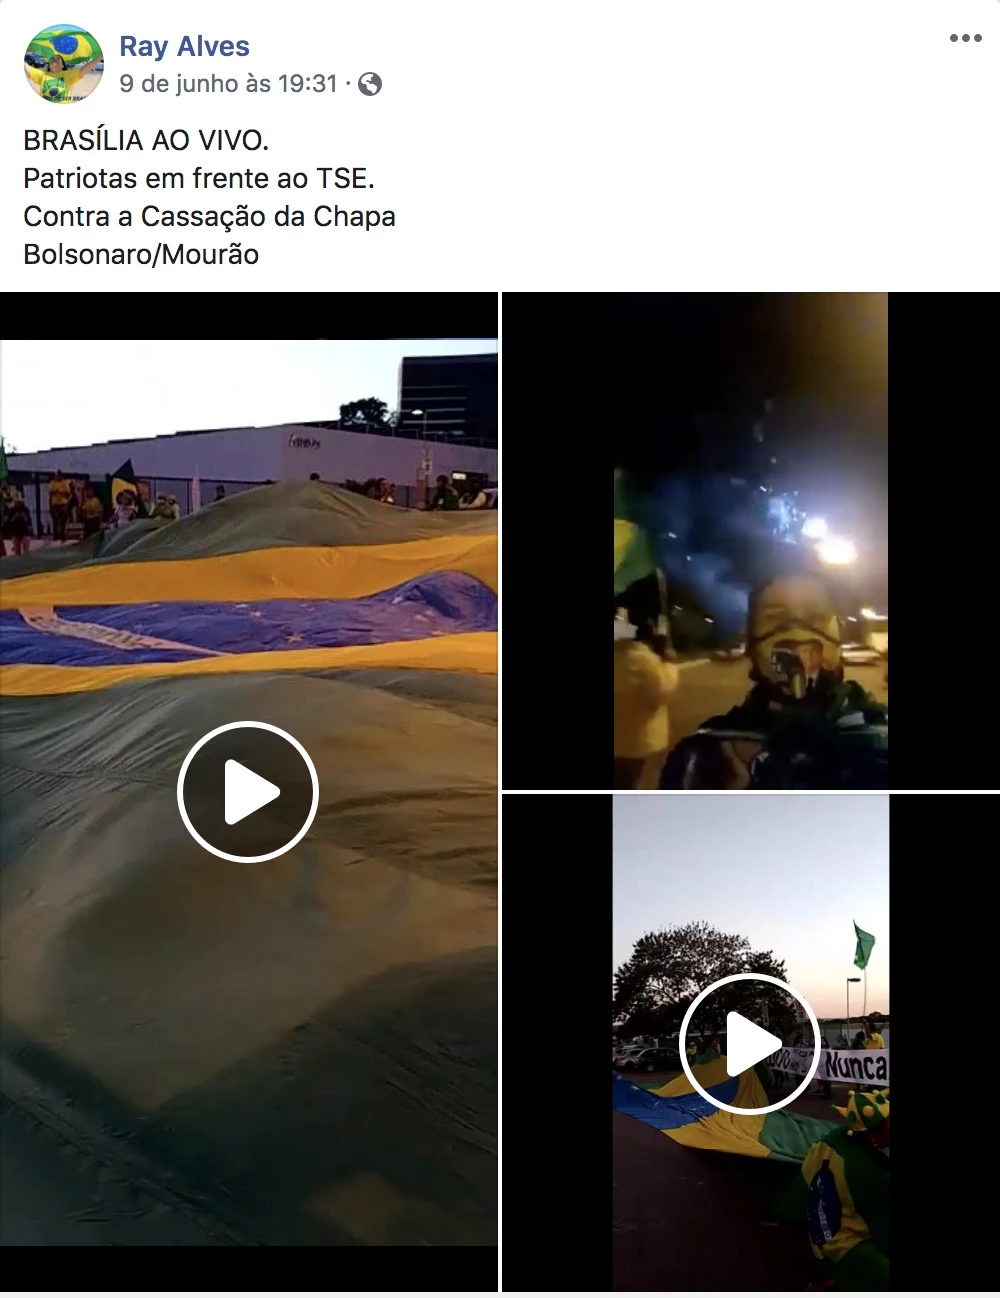 Vídeos postados por Reis em manifestação contra a cassação da chapa Bolsonaro-Mourão, de que participou em horário de expediente.